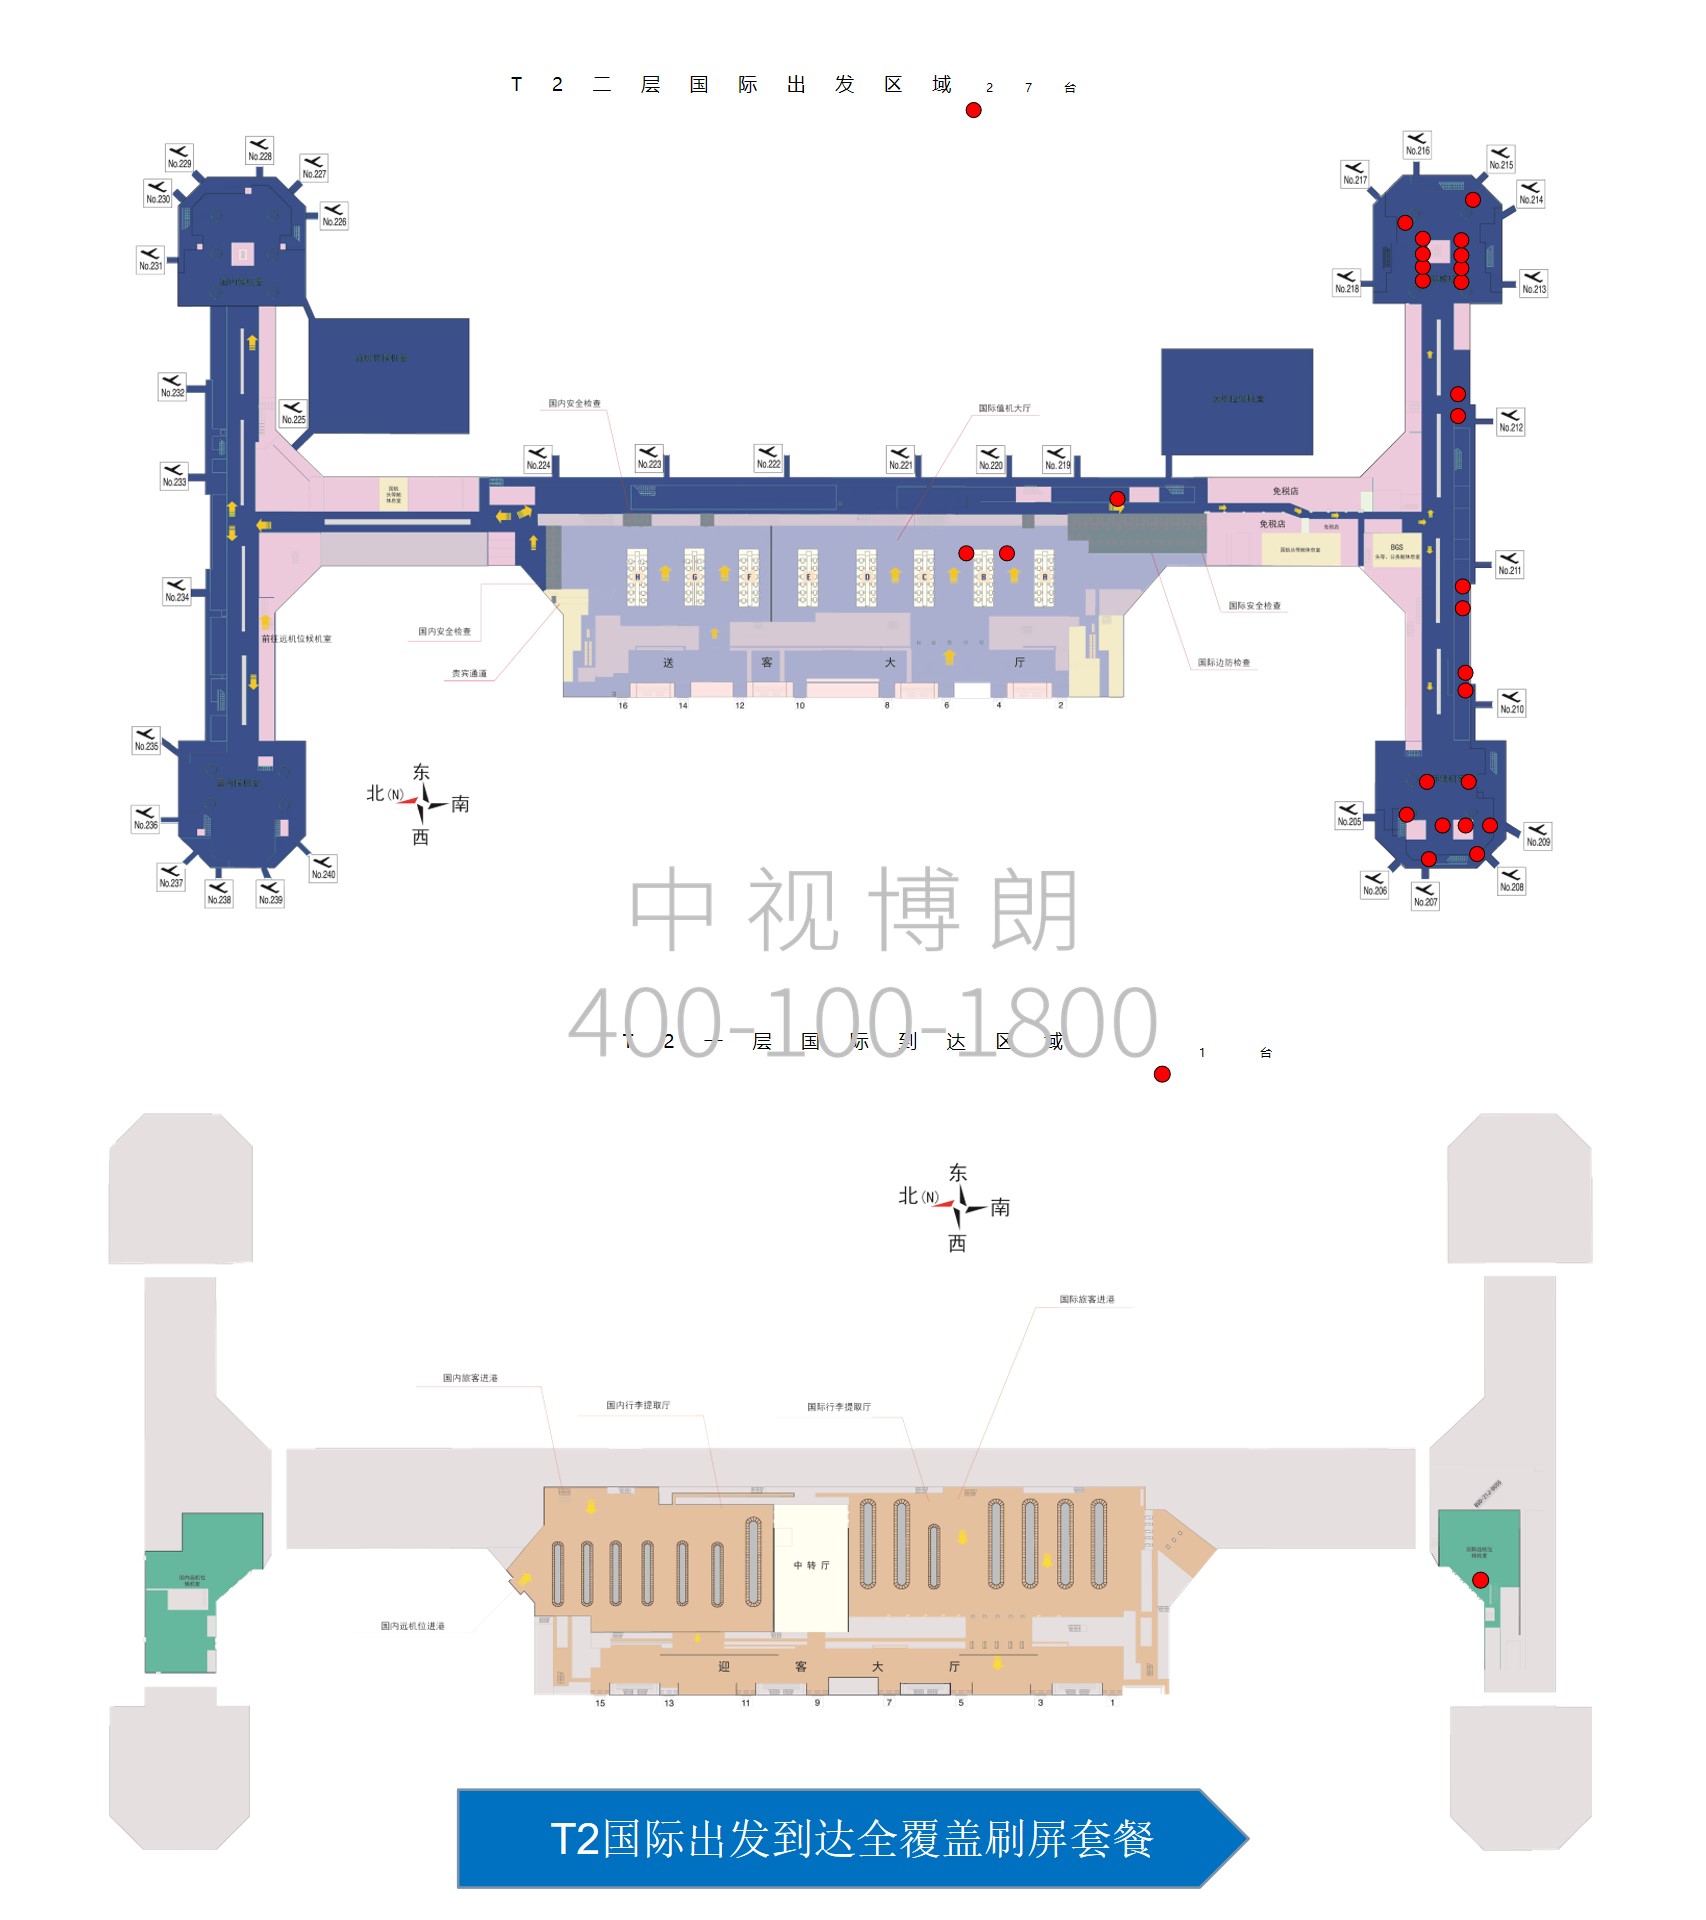 北京首都机场广告-T2国际出发到达全覆盖刷屏套餐位置图